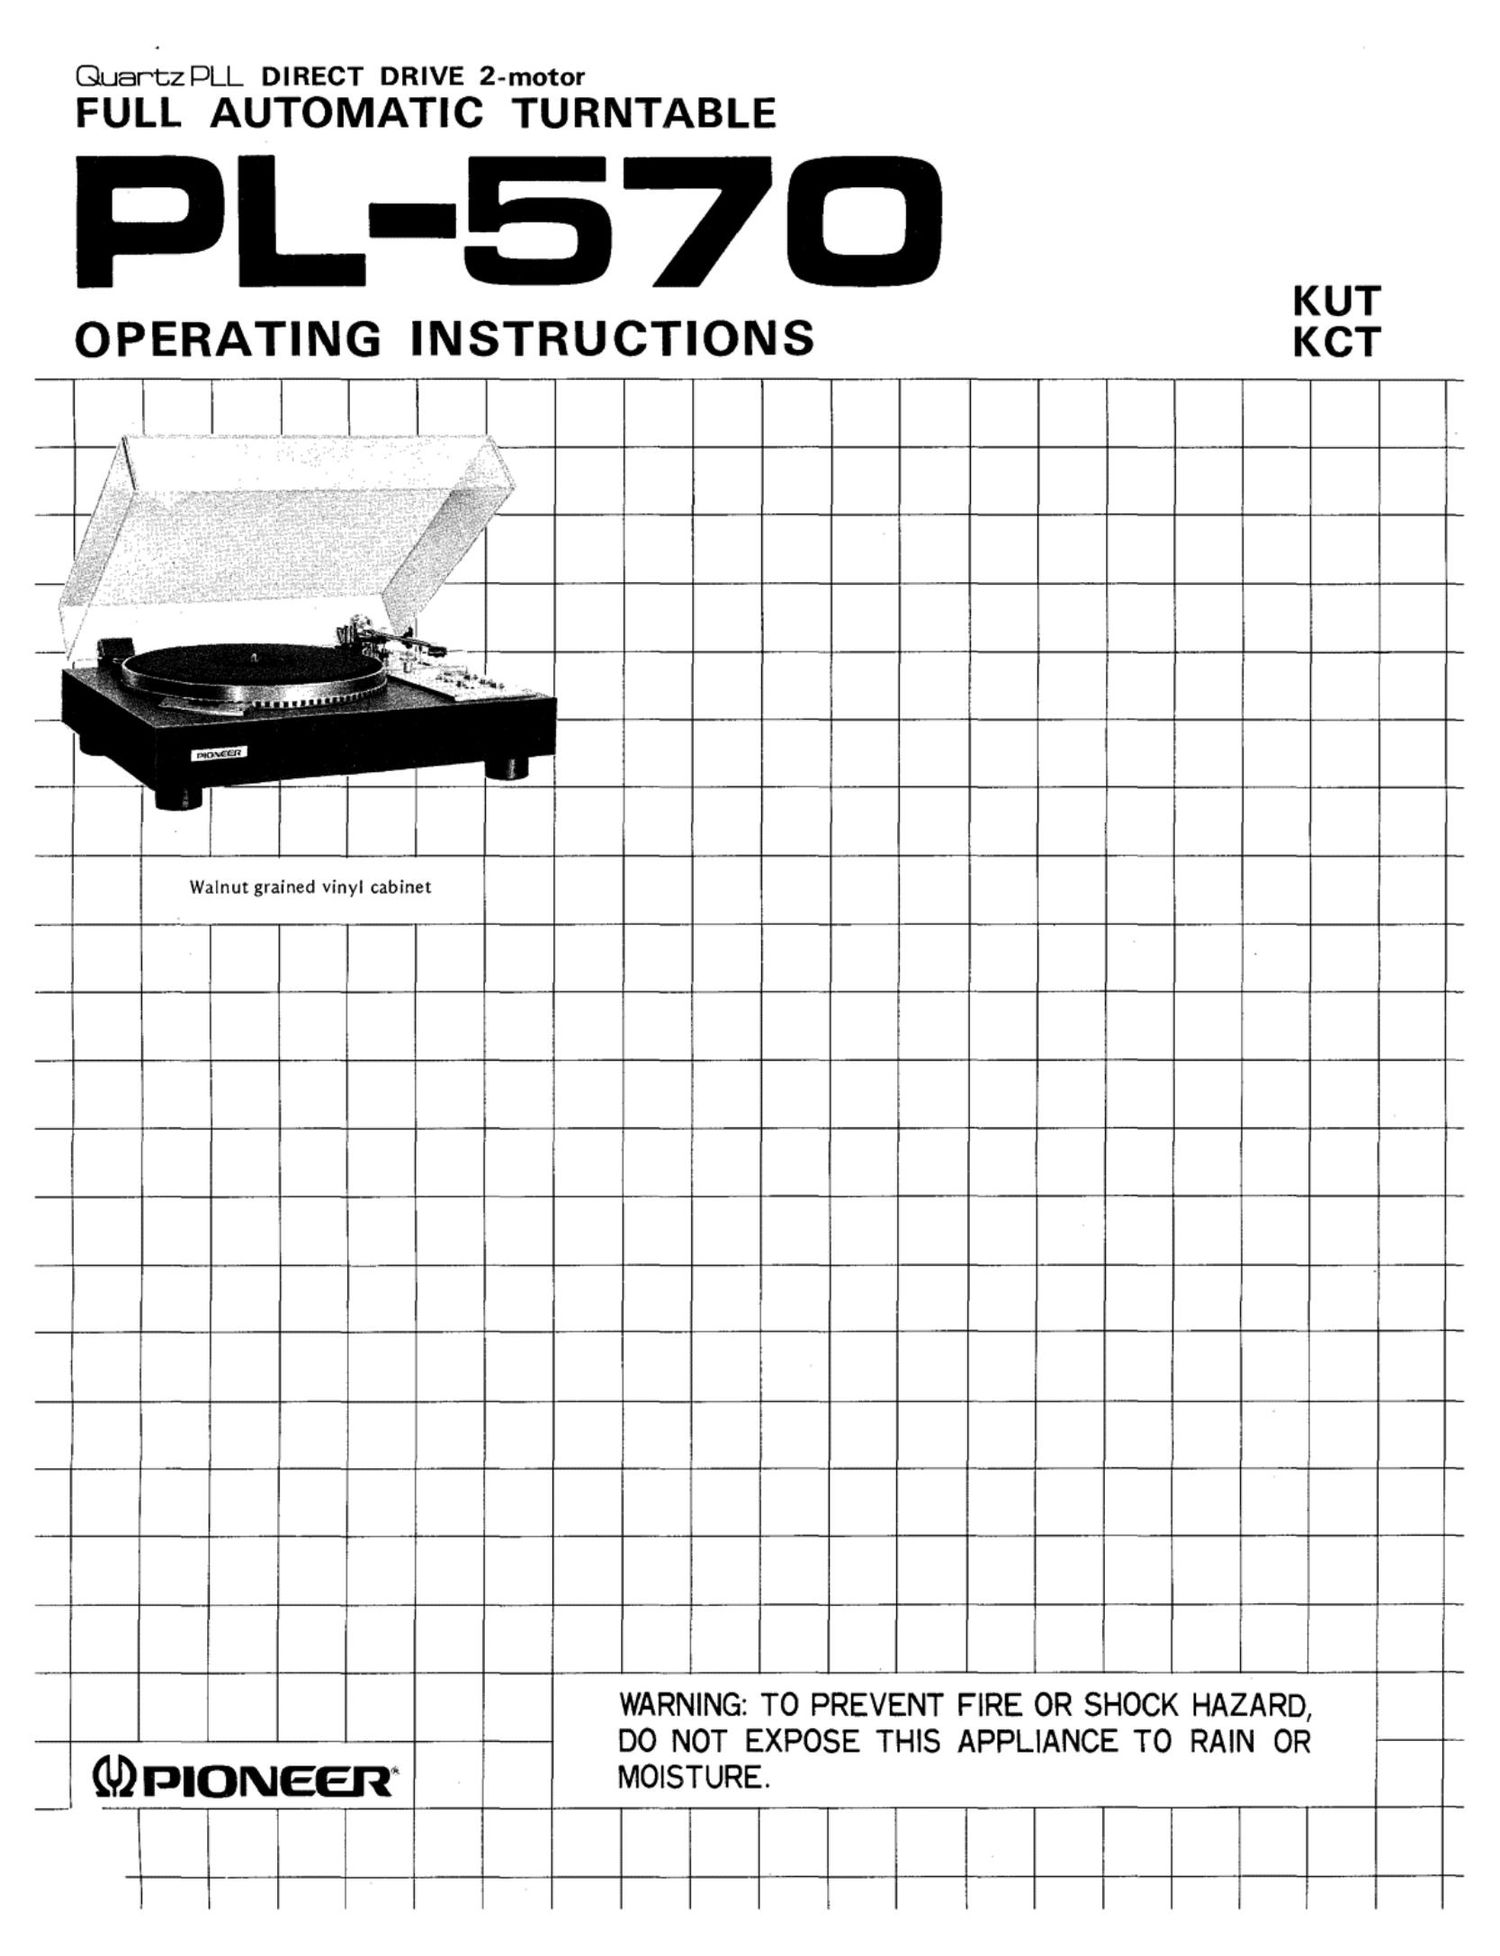 Pioneer PL-570 Turntable Owners Manual 